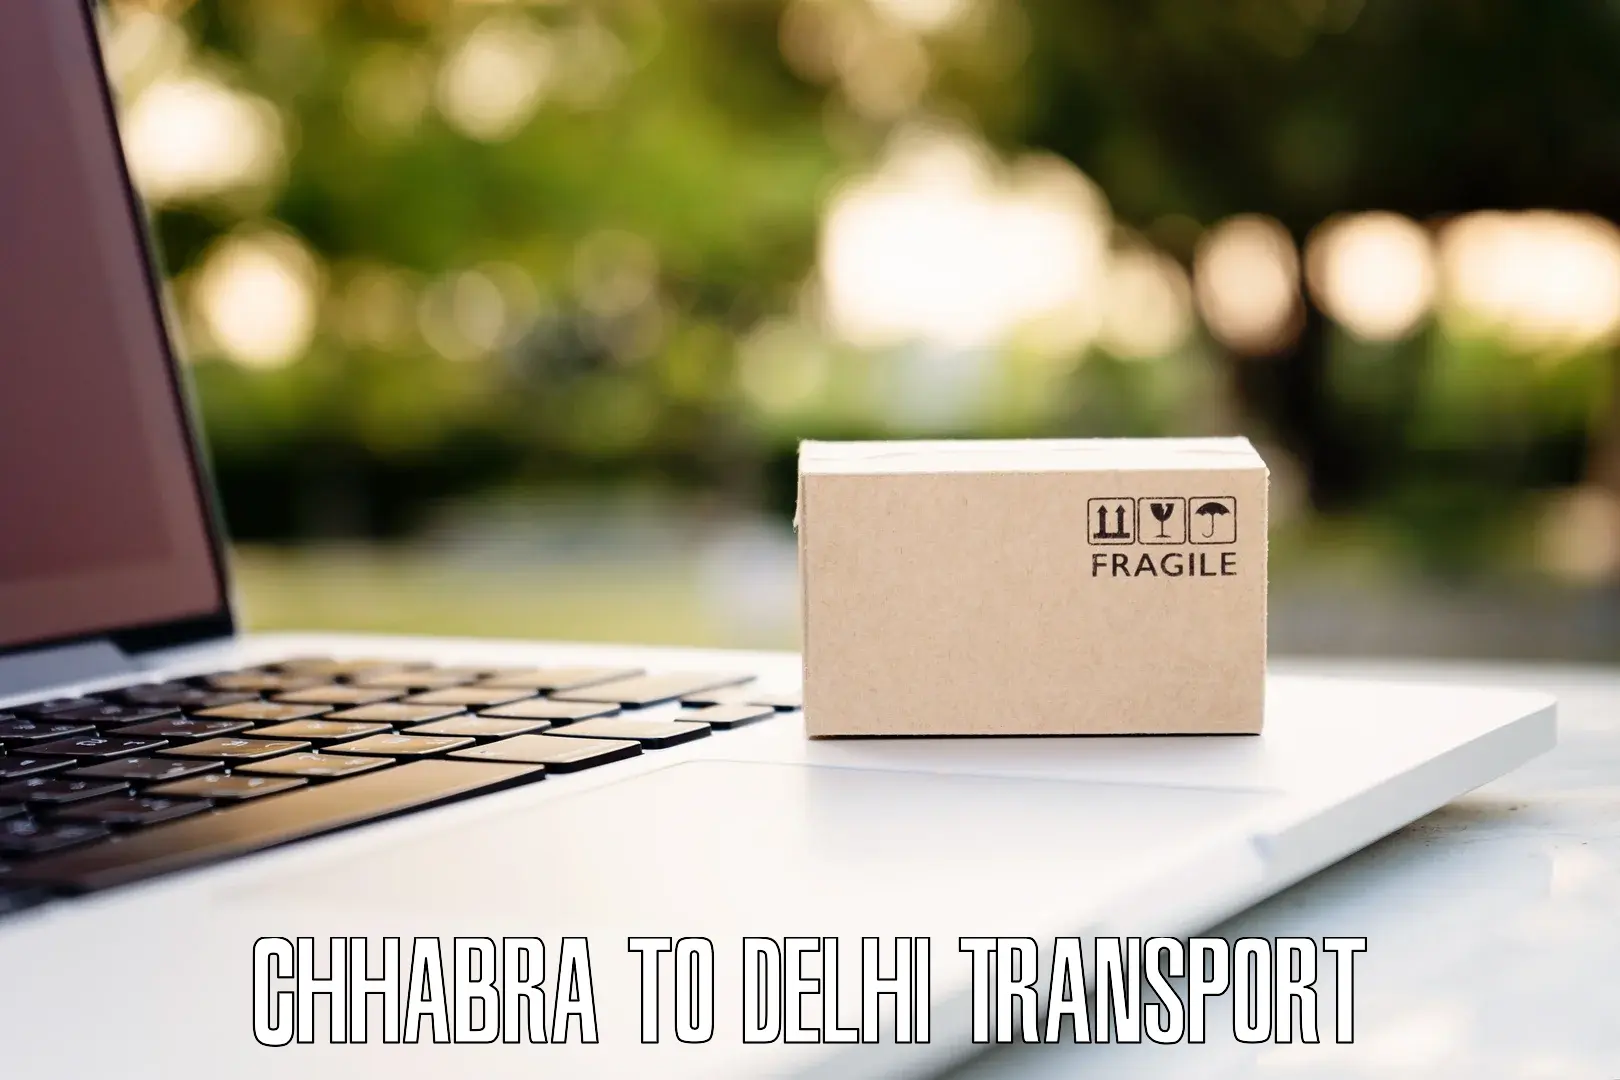 Two wheeler parcel service Chhabra to Kalkaji